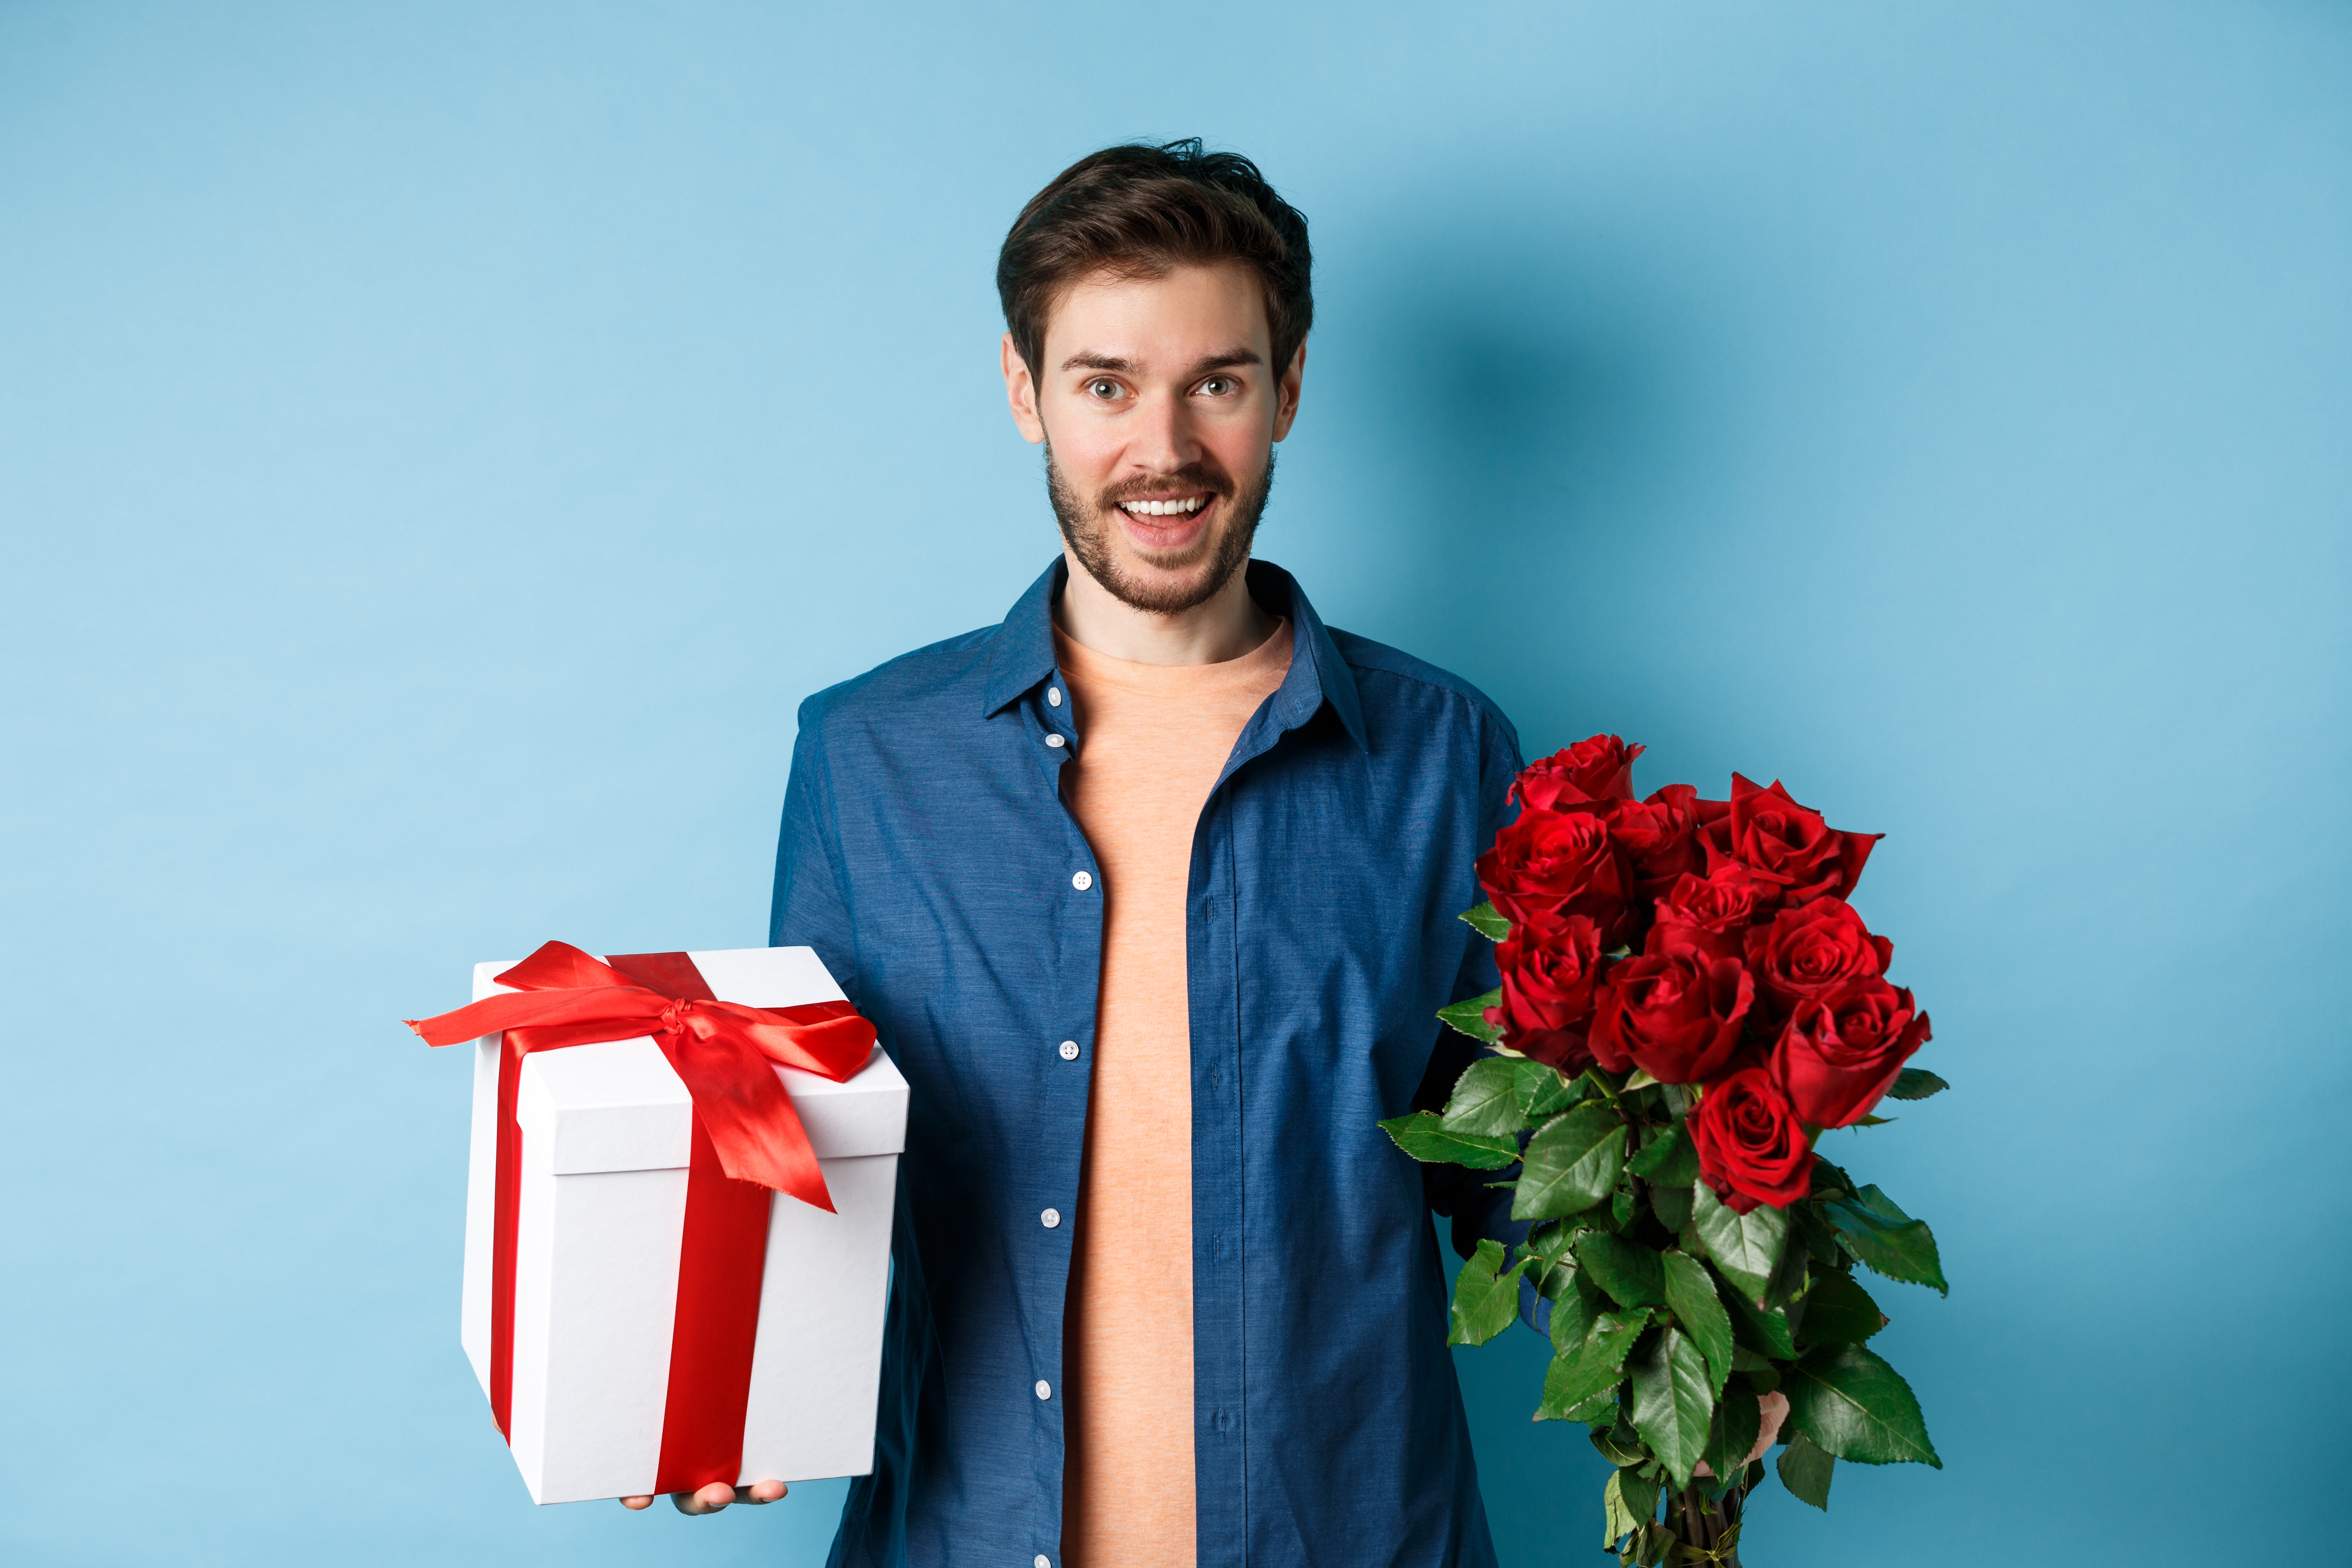 Mann mit einem Rosenstrauß und einer Geschenkbox | Quelle: Shutterstock